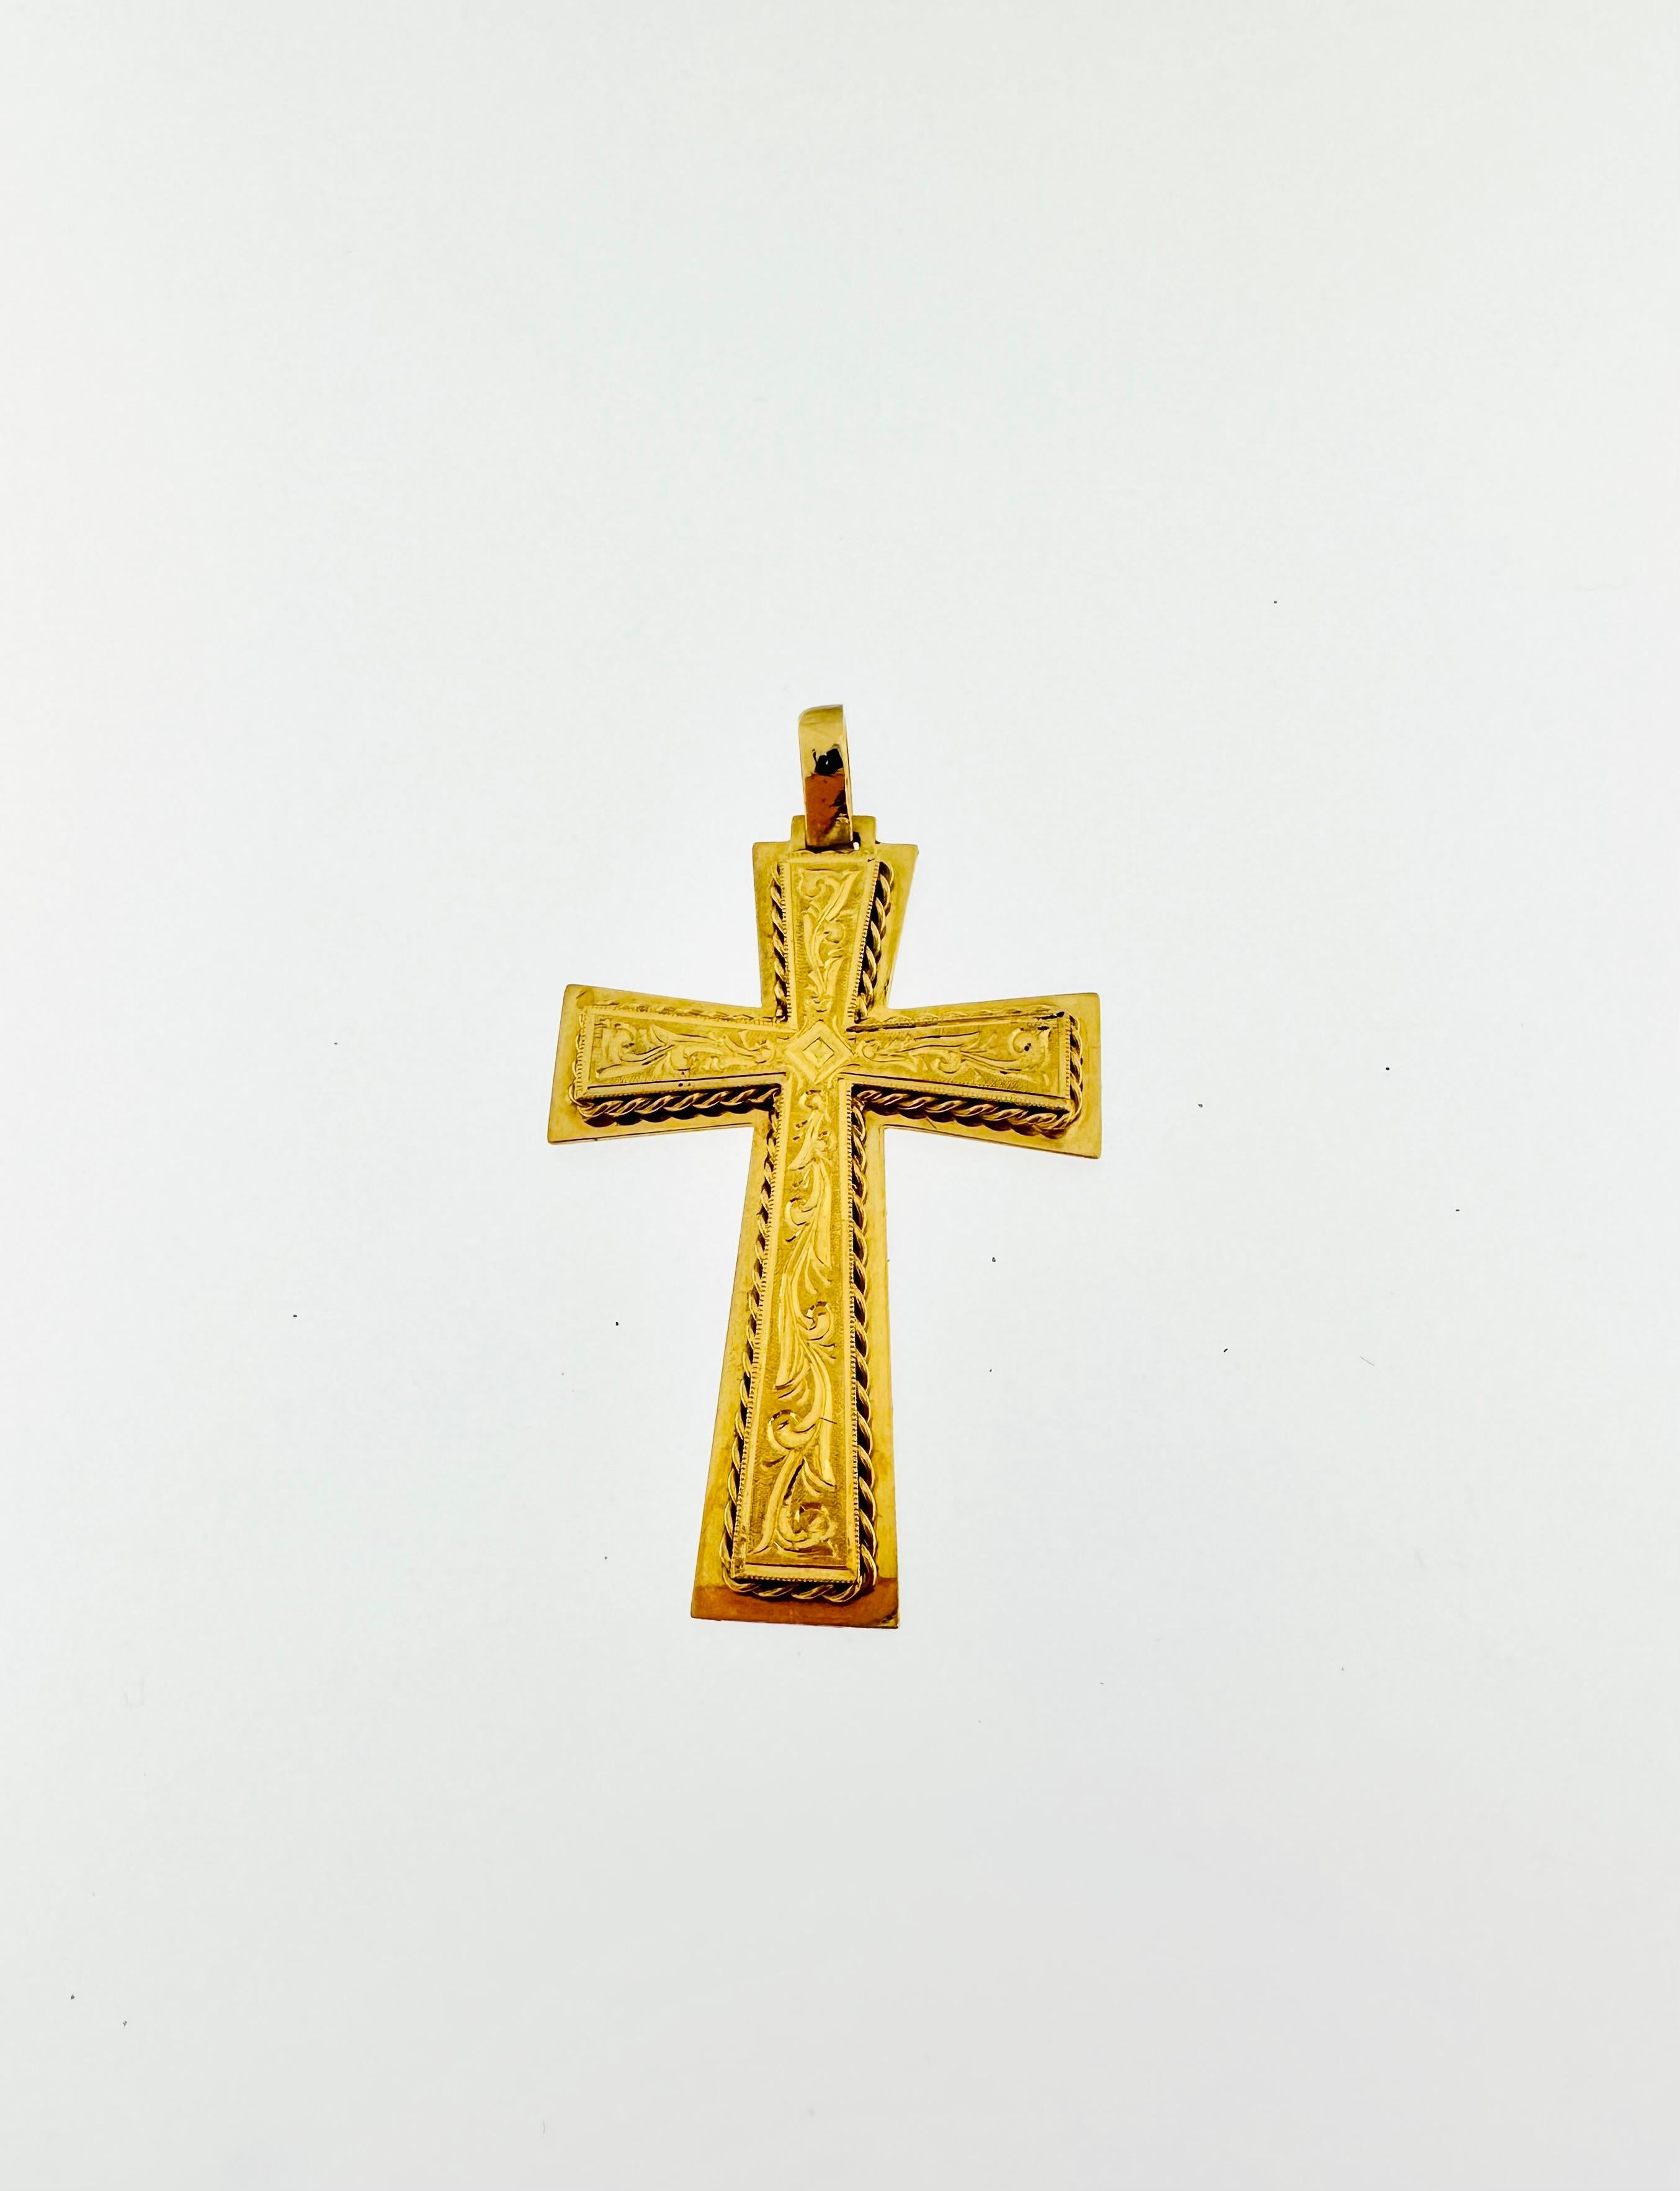 Die Arbeit an diesem Kreuz ist sehr detailliert und verleiht ihm eine einzigartige Schönheit. Dieses antike italienische Kreuz beeindruckt durch die Präzision und die Detailgenauigkeit der Verzierung. Dieses schöne und elegante italienische